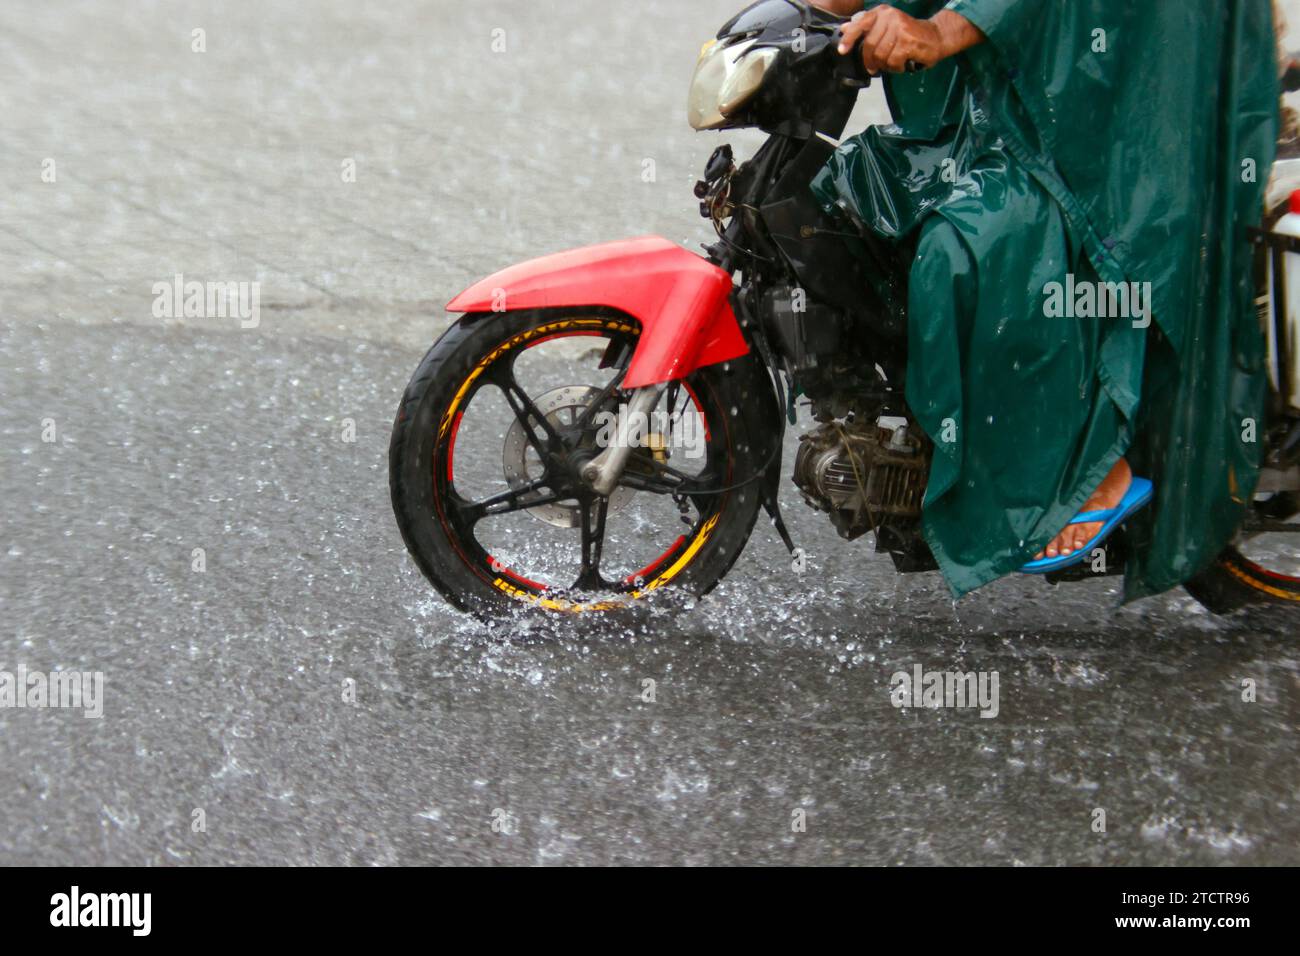 Saison Monsoon. Fortes pluies et engorgement de l'eau sur la route. Moto. Banque D'Images